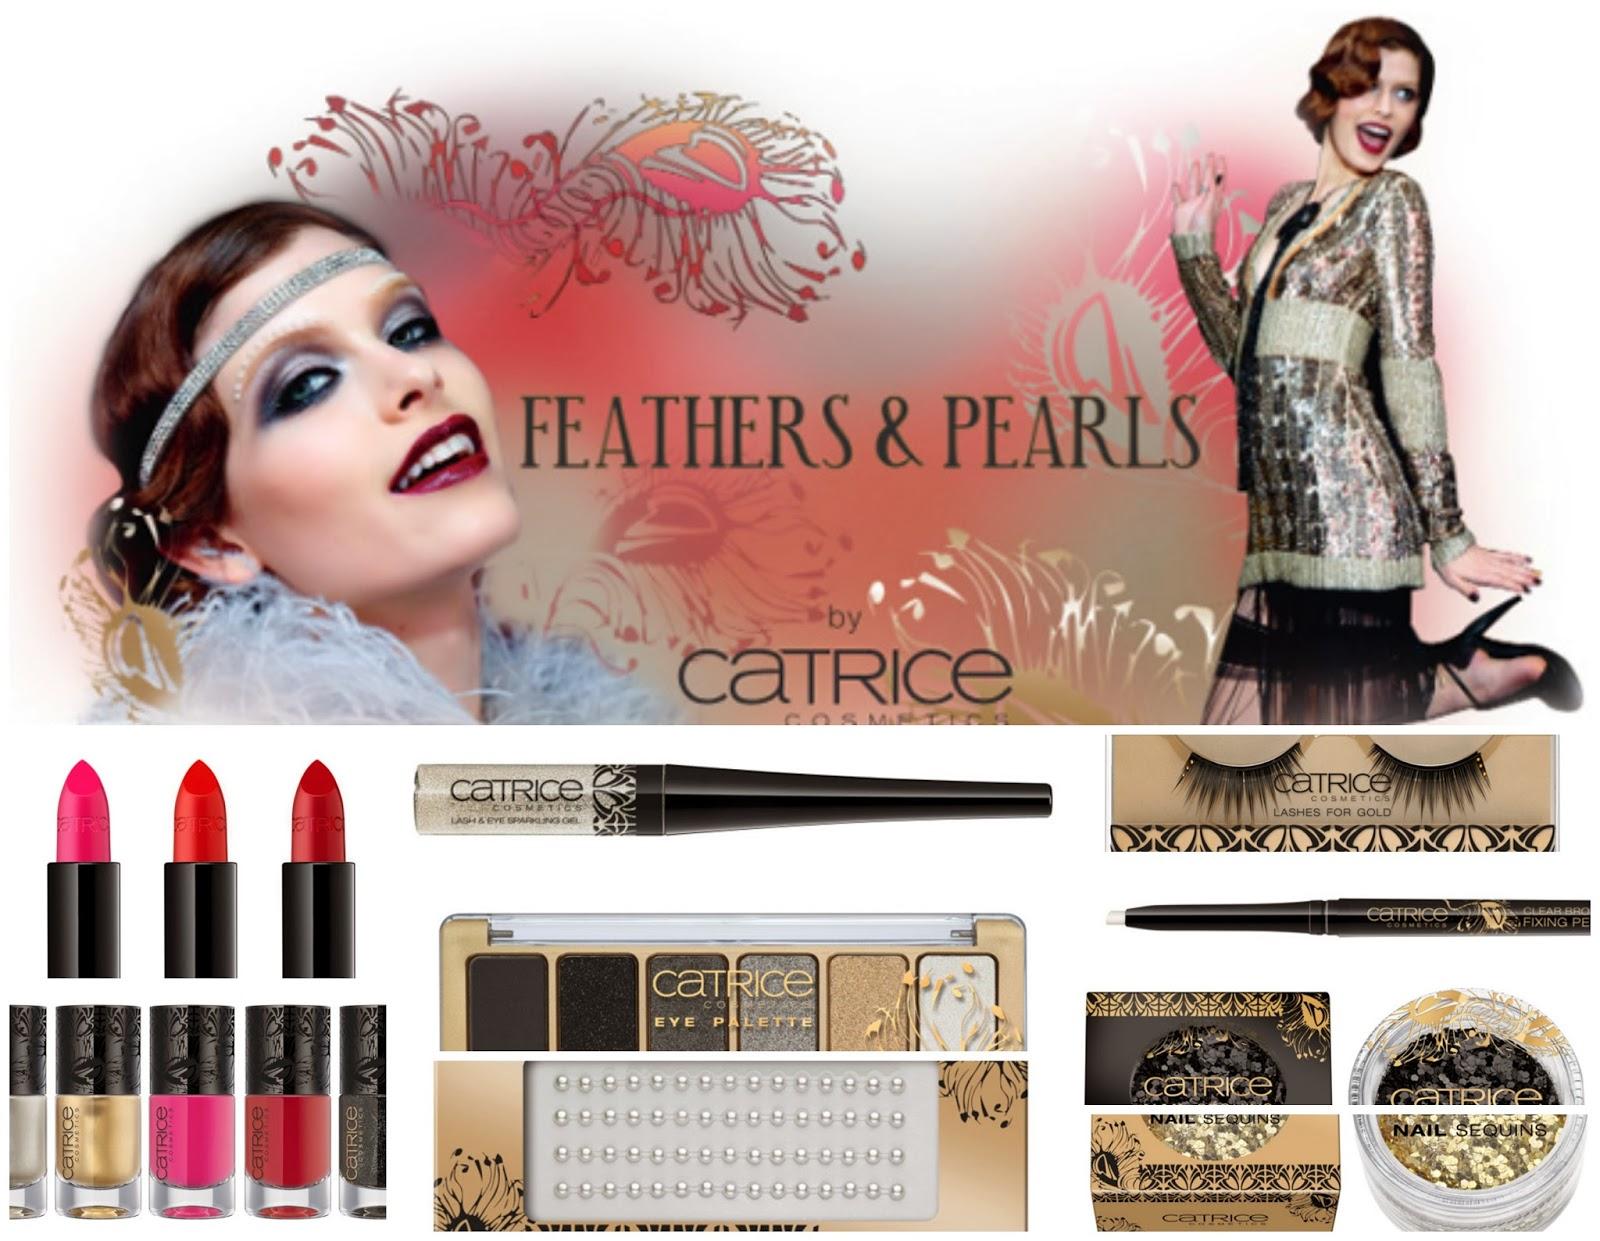 otra colección de Catrice, Feathers & Pearls